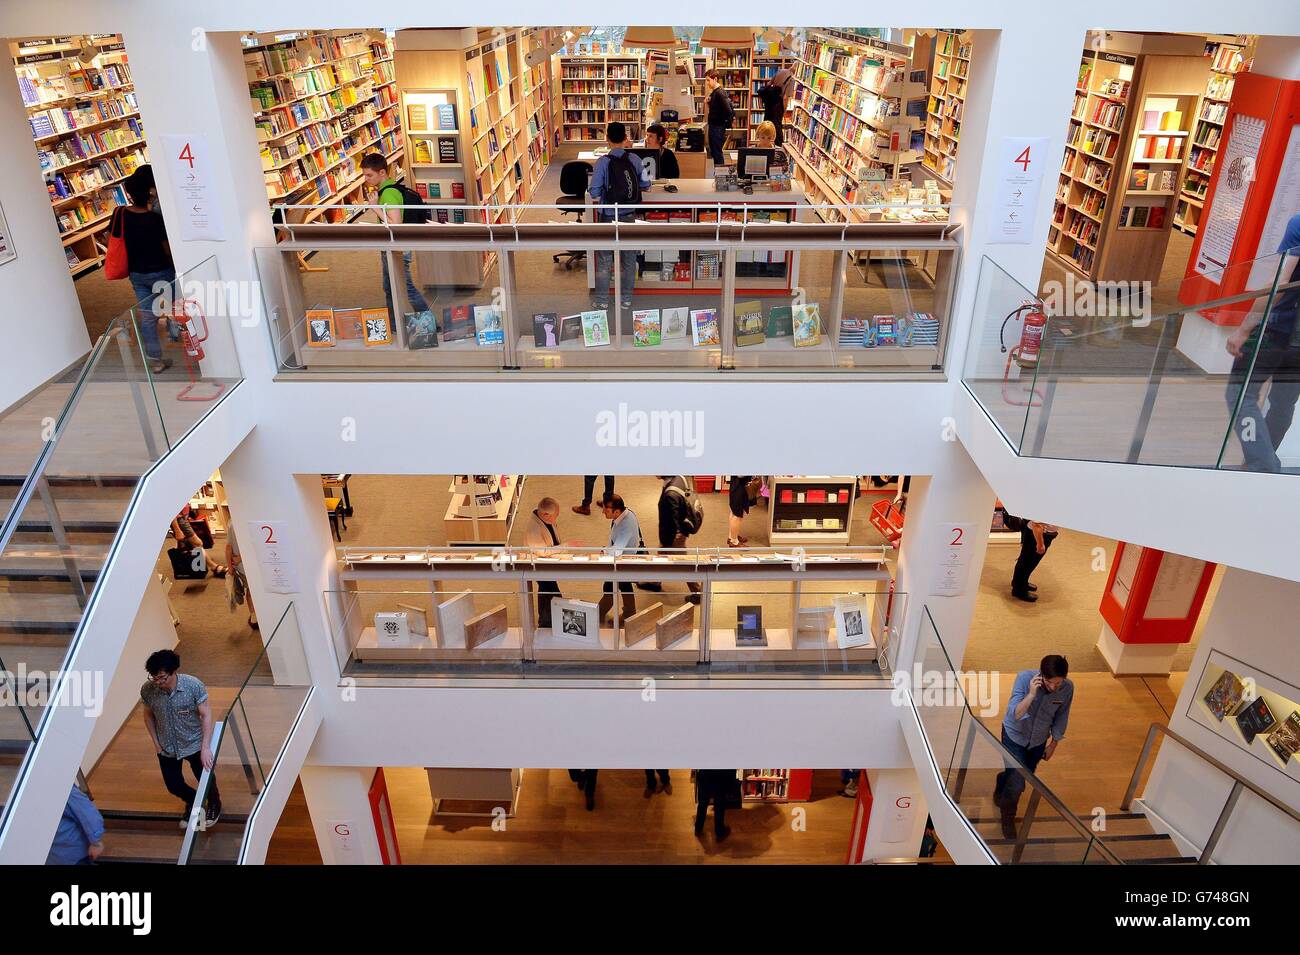 La nuova libreria Foyles ammiraglia su Charing Cross Road, Londra, come è  stato ufficialmente aperto dall'autore Hilary Mantel (non illustrato Foto  stock - Alamy